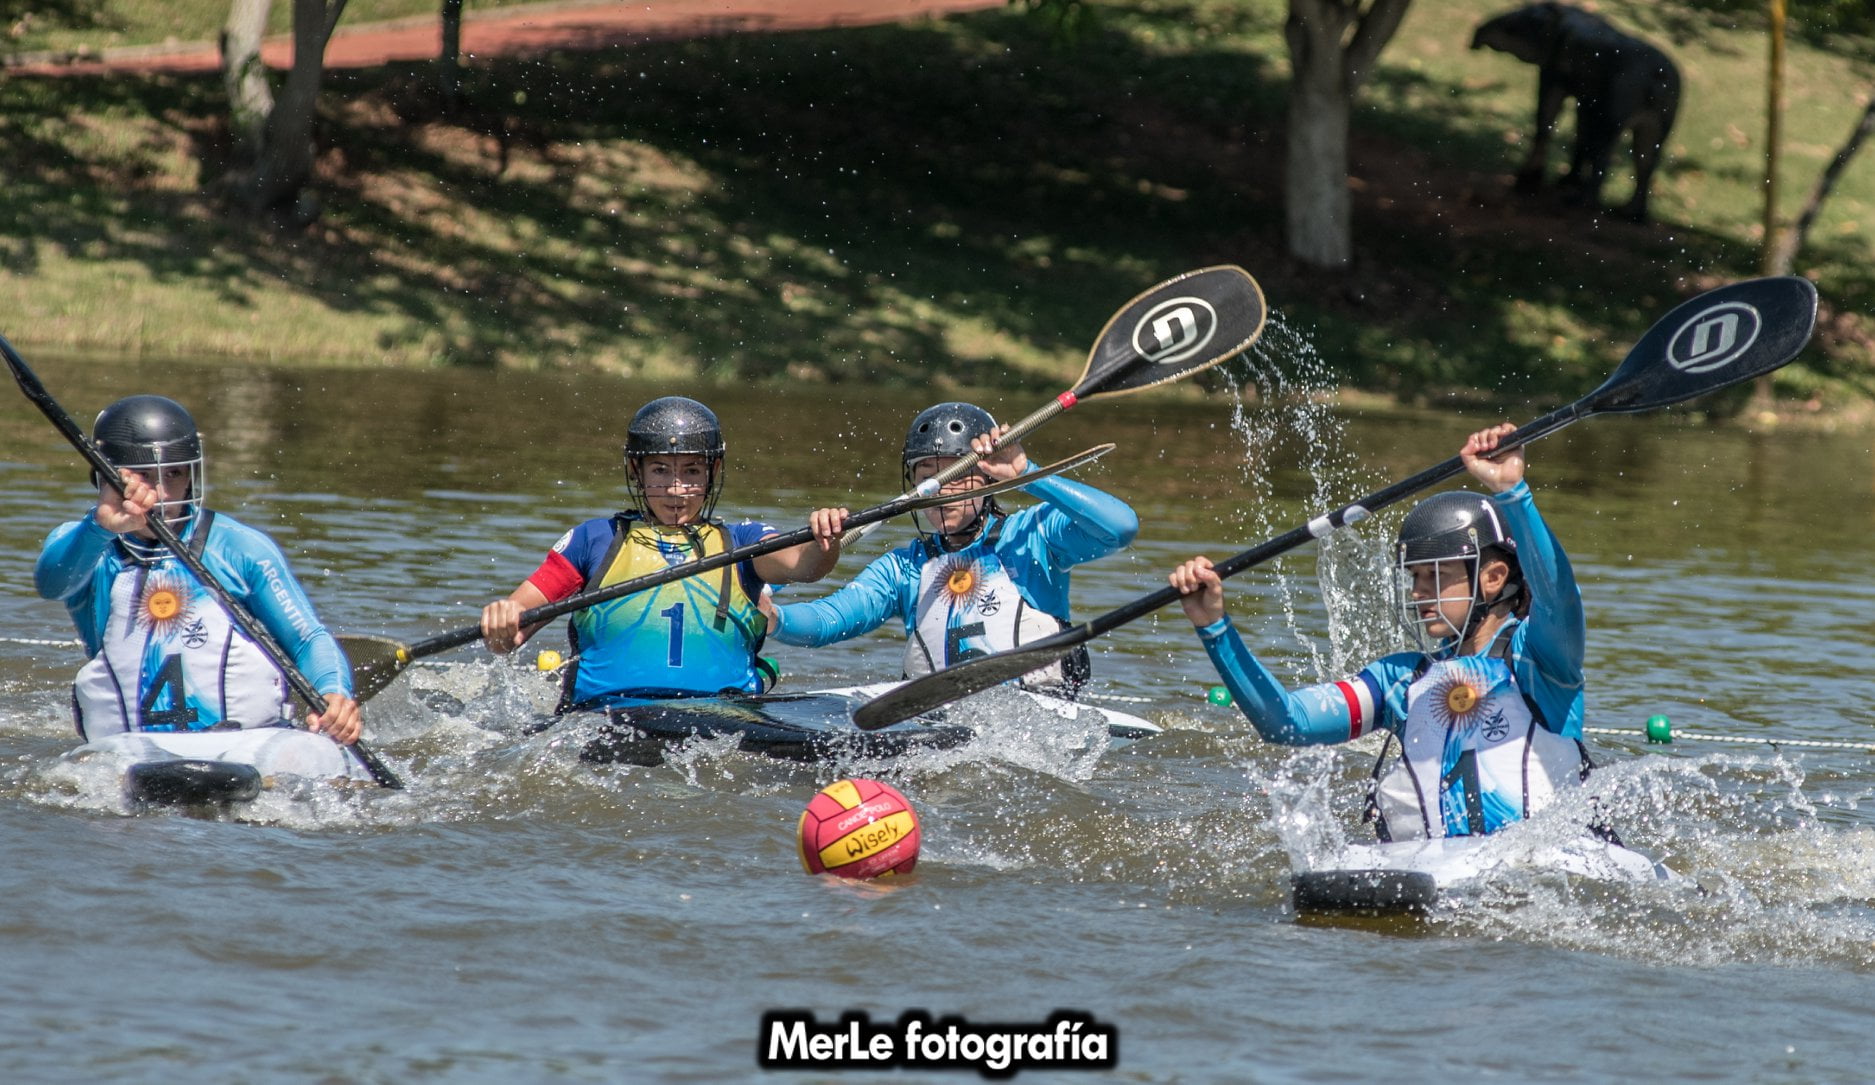 Comenzó la competencia para Argentina en el Panamericano de Kayak Polo